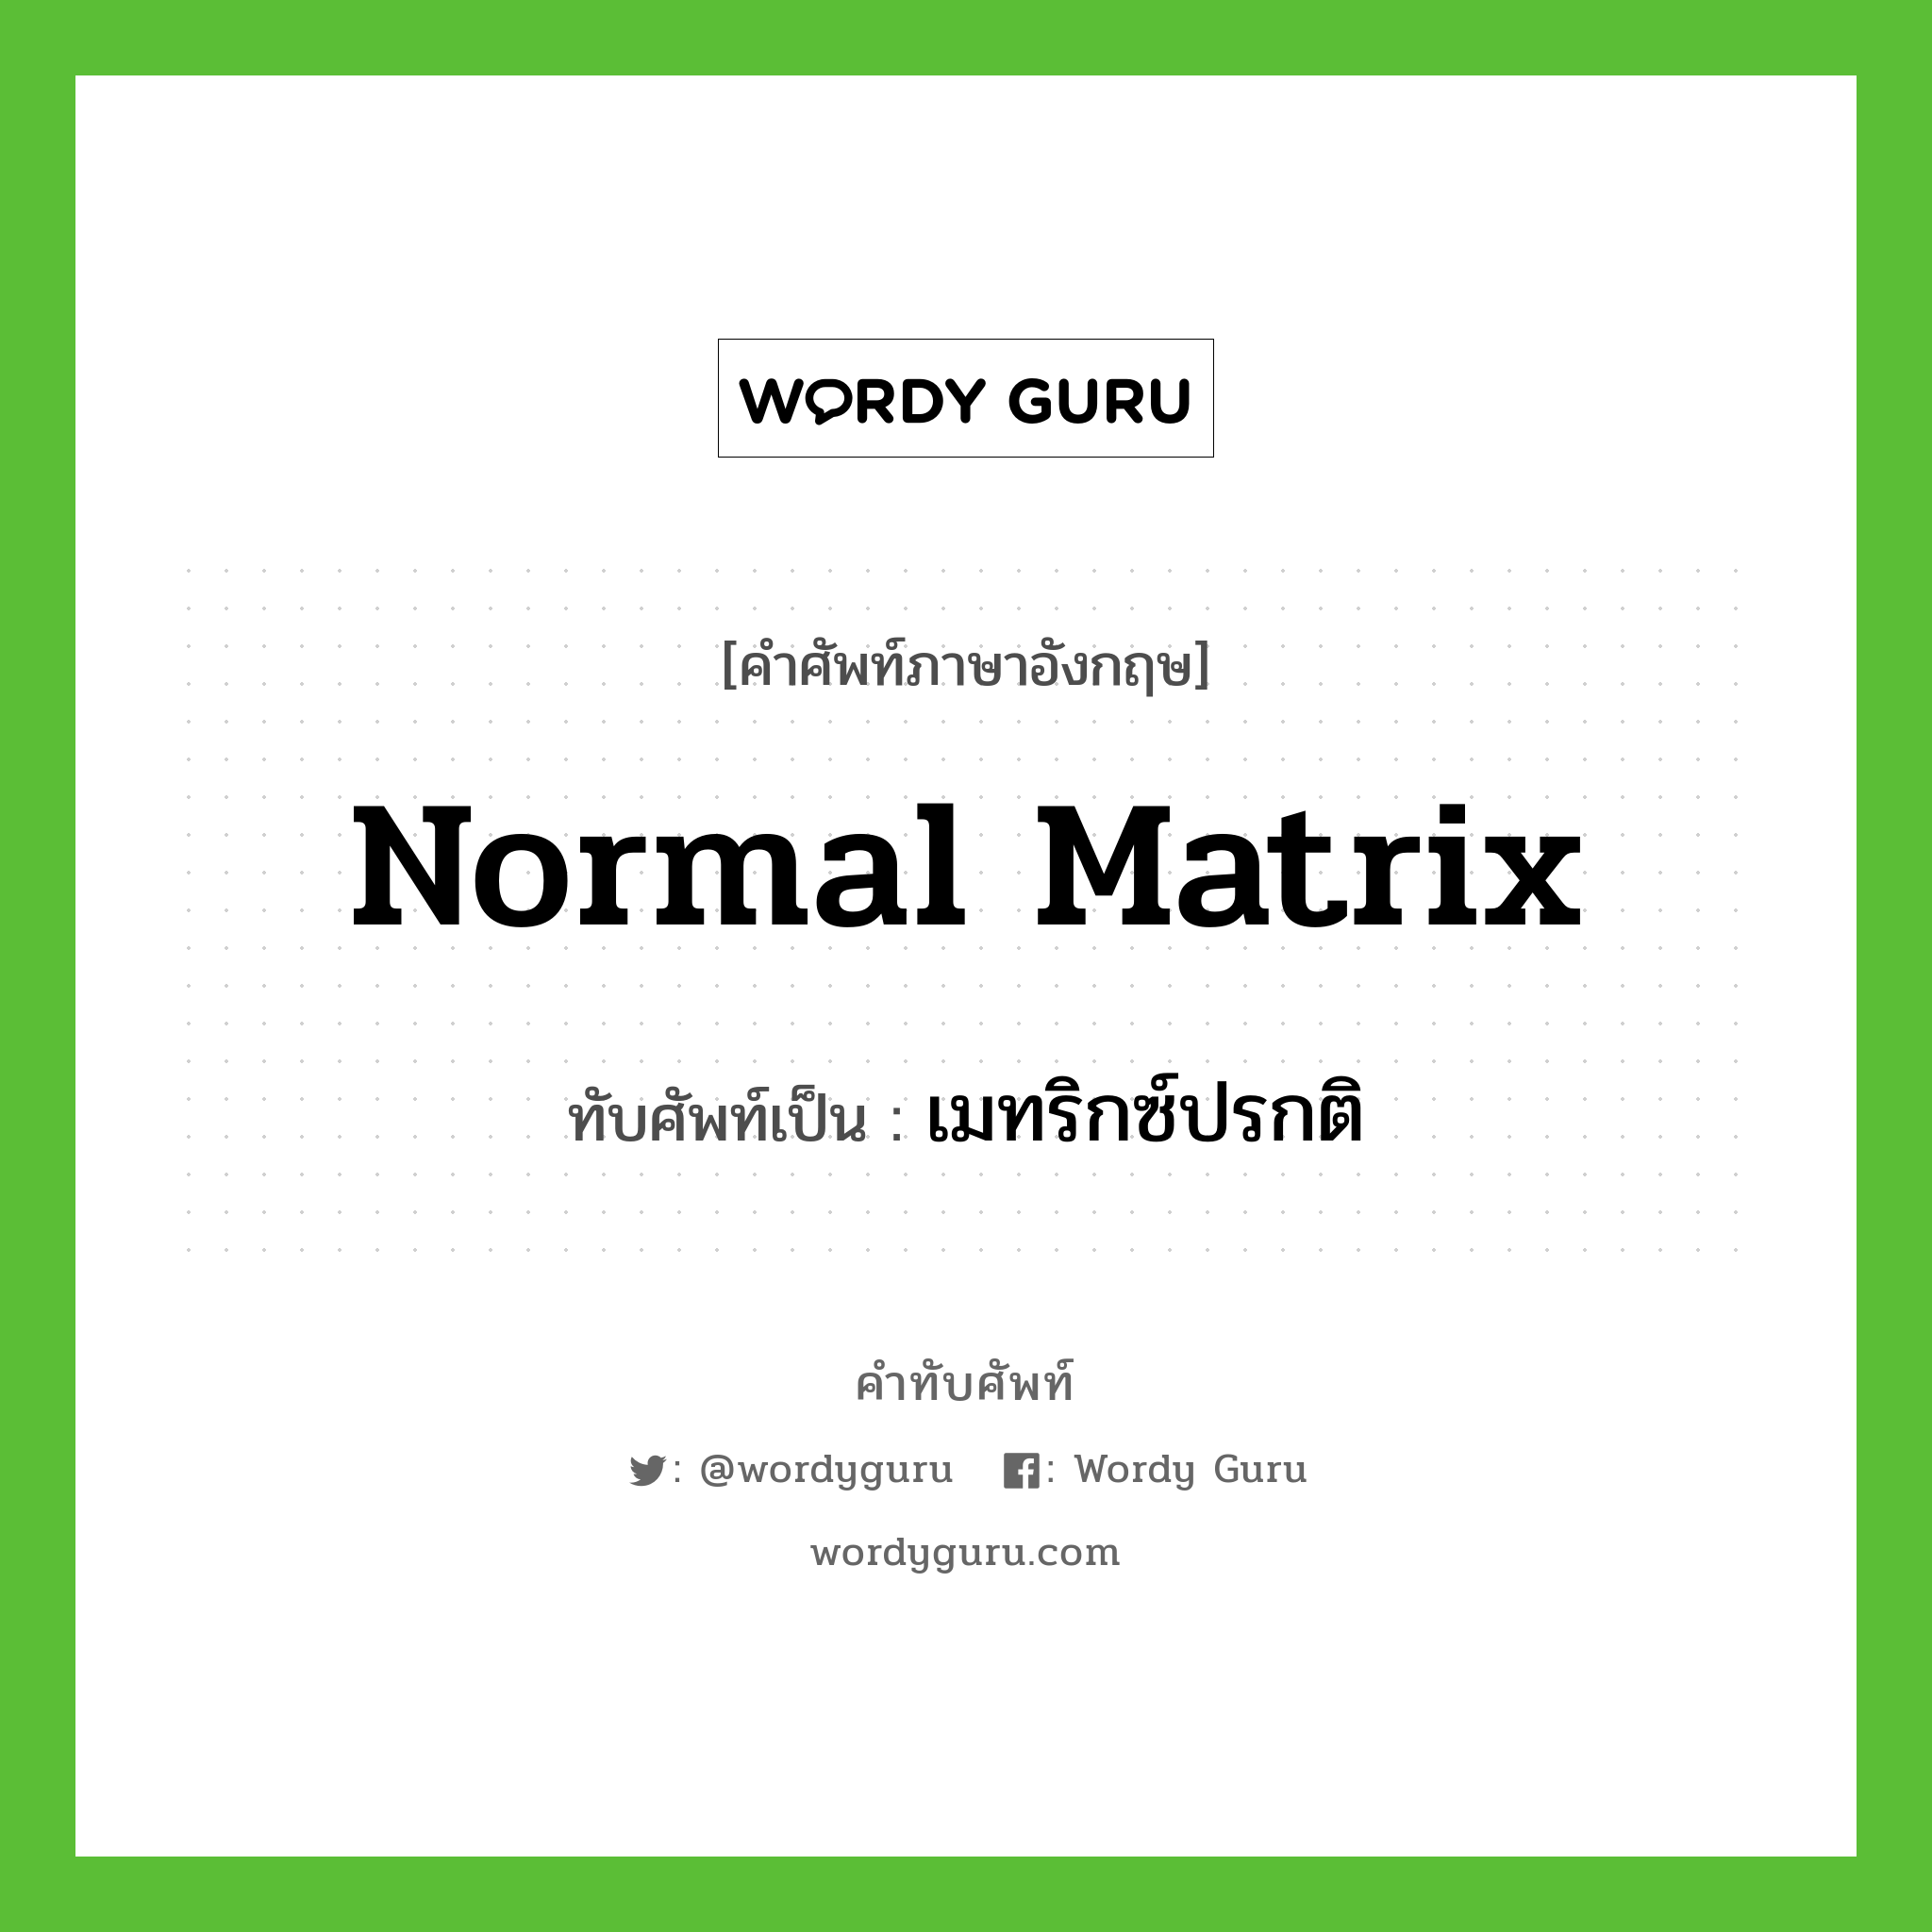 normal matrix เขียนเป็นคำไทยว่าอะไร?, คำศัพท์ภาษาอังกฤษ normal matrix ทับศัพท์เป็น เมทริกซ์ปรกติ